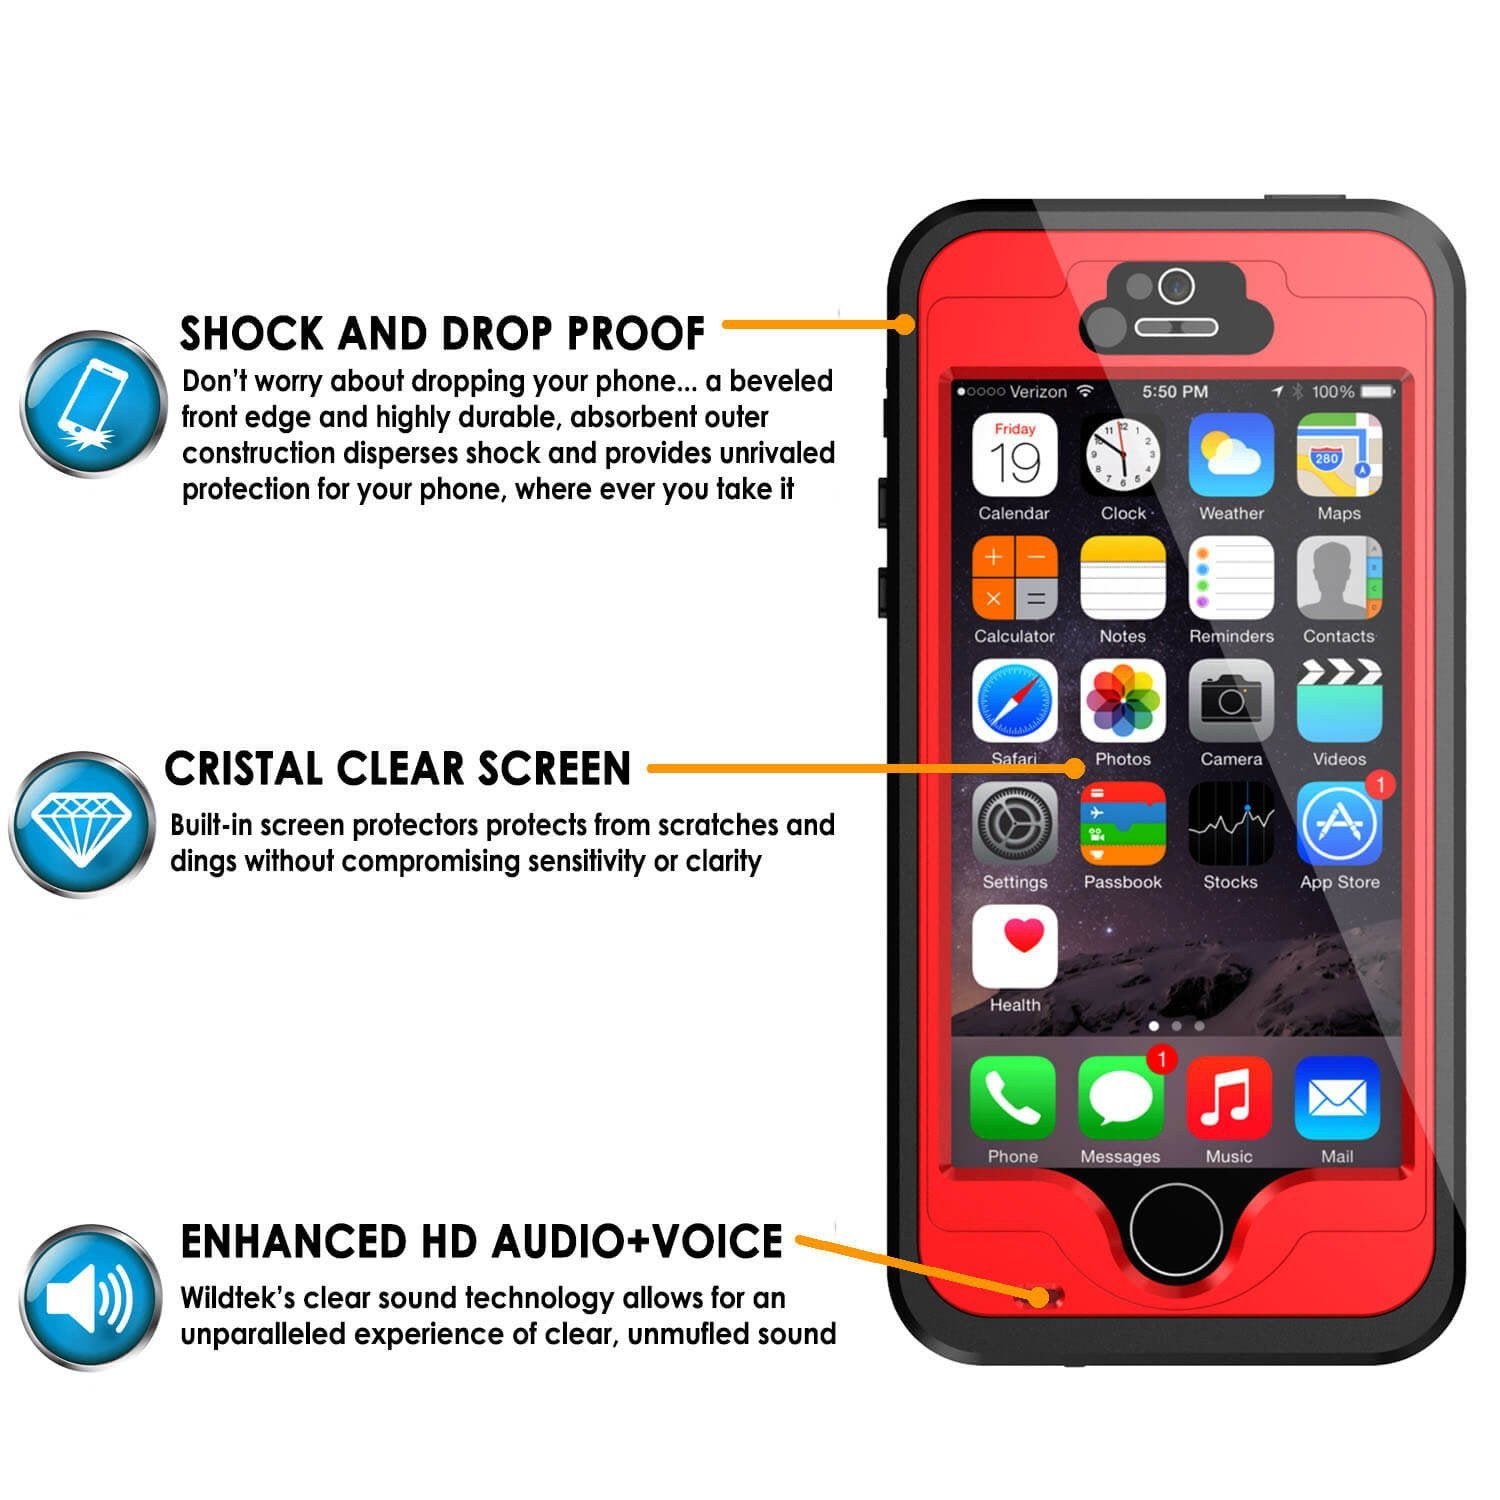 iPhone SE/5S/5 Waterproof Case, PunkCase StudStar Red Case Shock/Dirt/Snow Proof | Lifetime Warranty